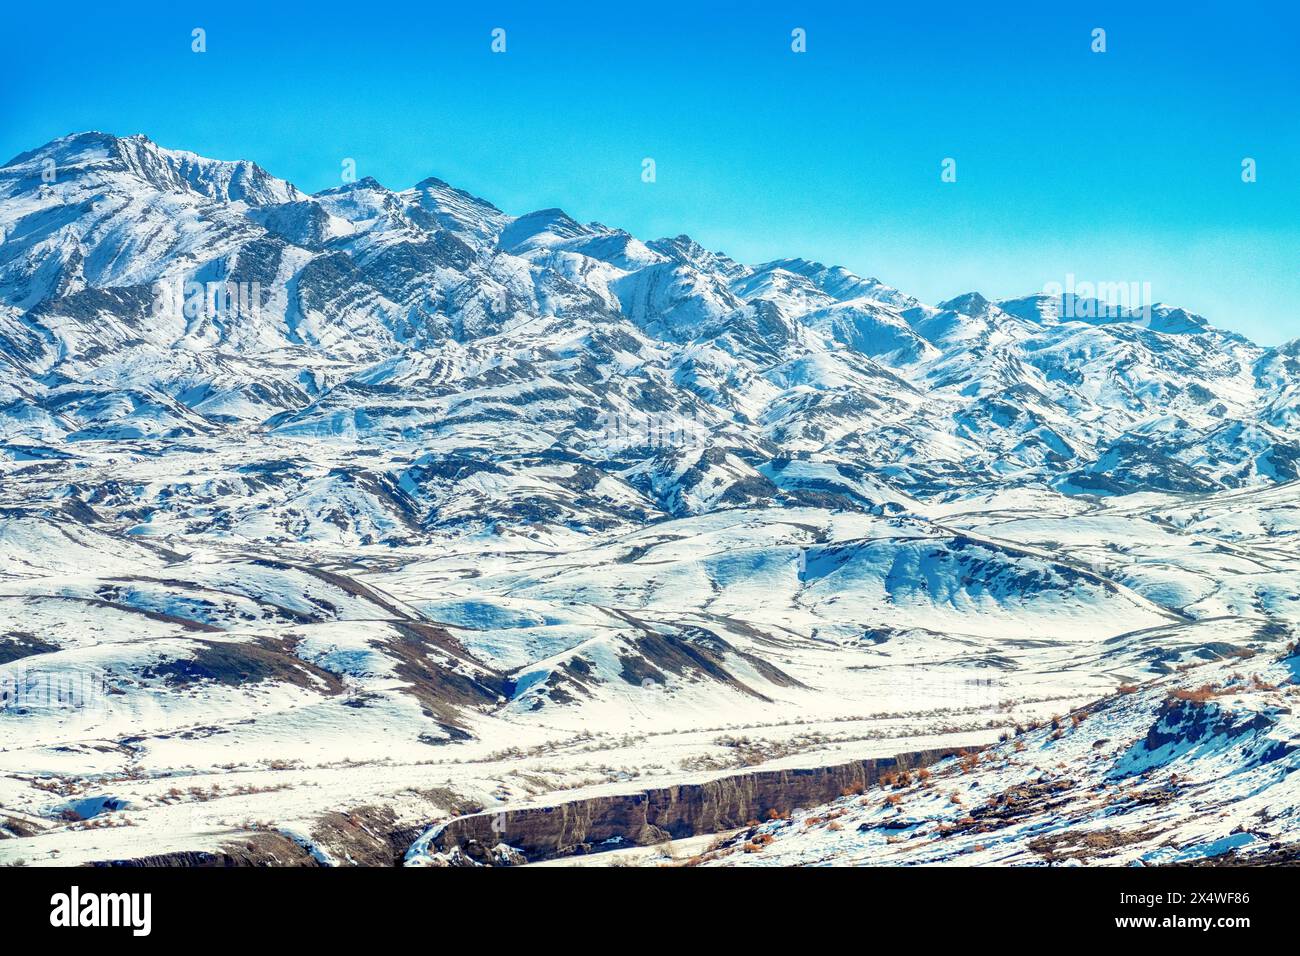 Gli speroni meridionali dei monti Zagros (Pathak) durante il periodo invernale della neve, gli strati calcarei. Vecchie montagne innevate con tracce di erosione dell'acqua ( Foto Stock